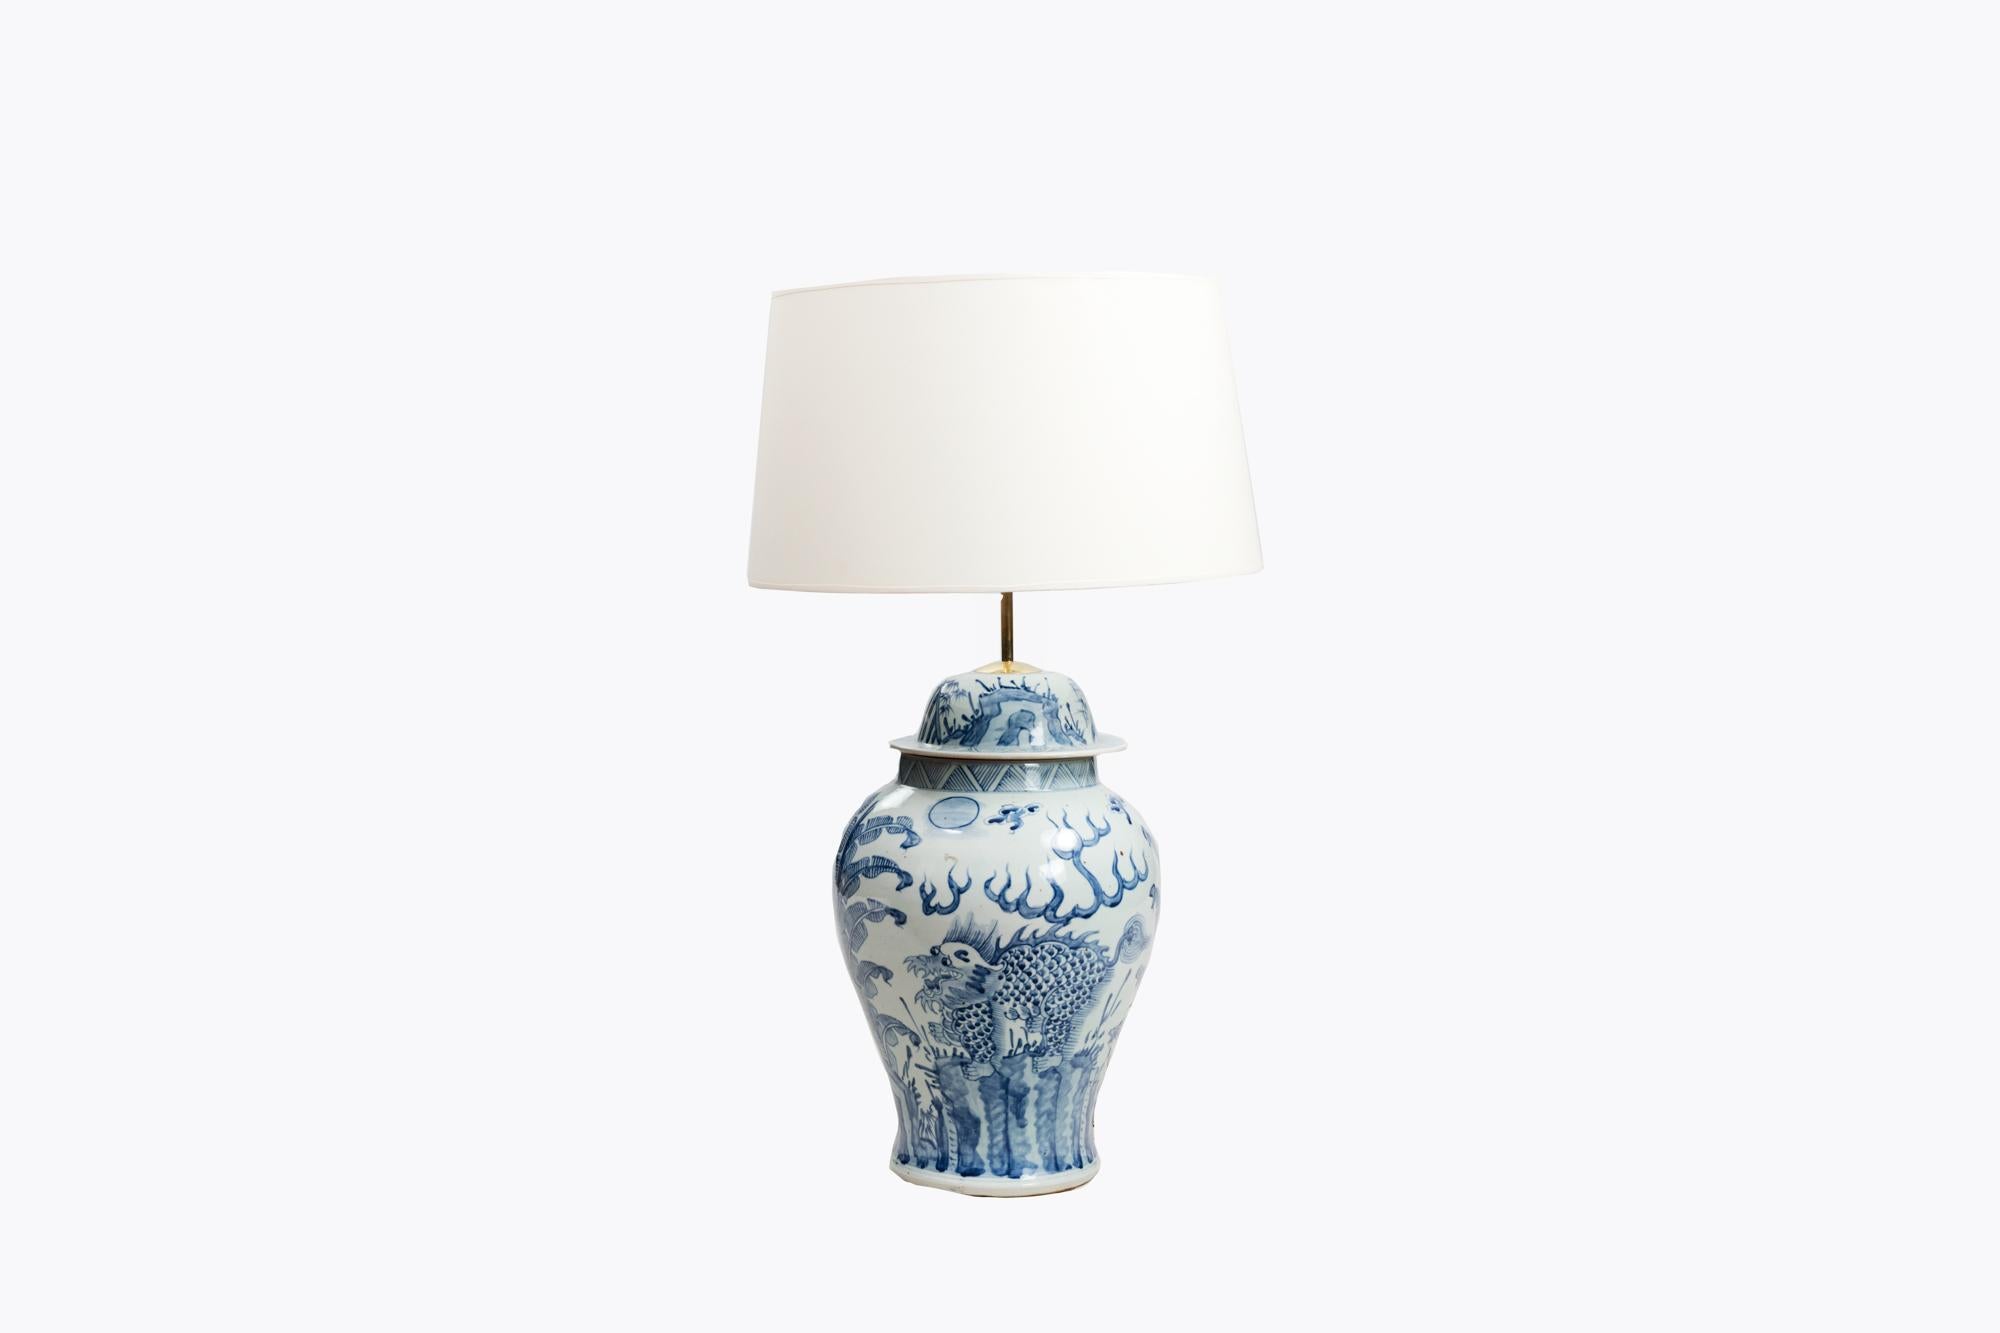 Blaues und weißes Ingwergefäß aus dem frühen 20. Jahrhundert, das zu einer Lampe im Stil der chinesischen Periode des 18. Verziert mit einer floralen Landschaft aus Blättern und geometrischen Motiven.